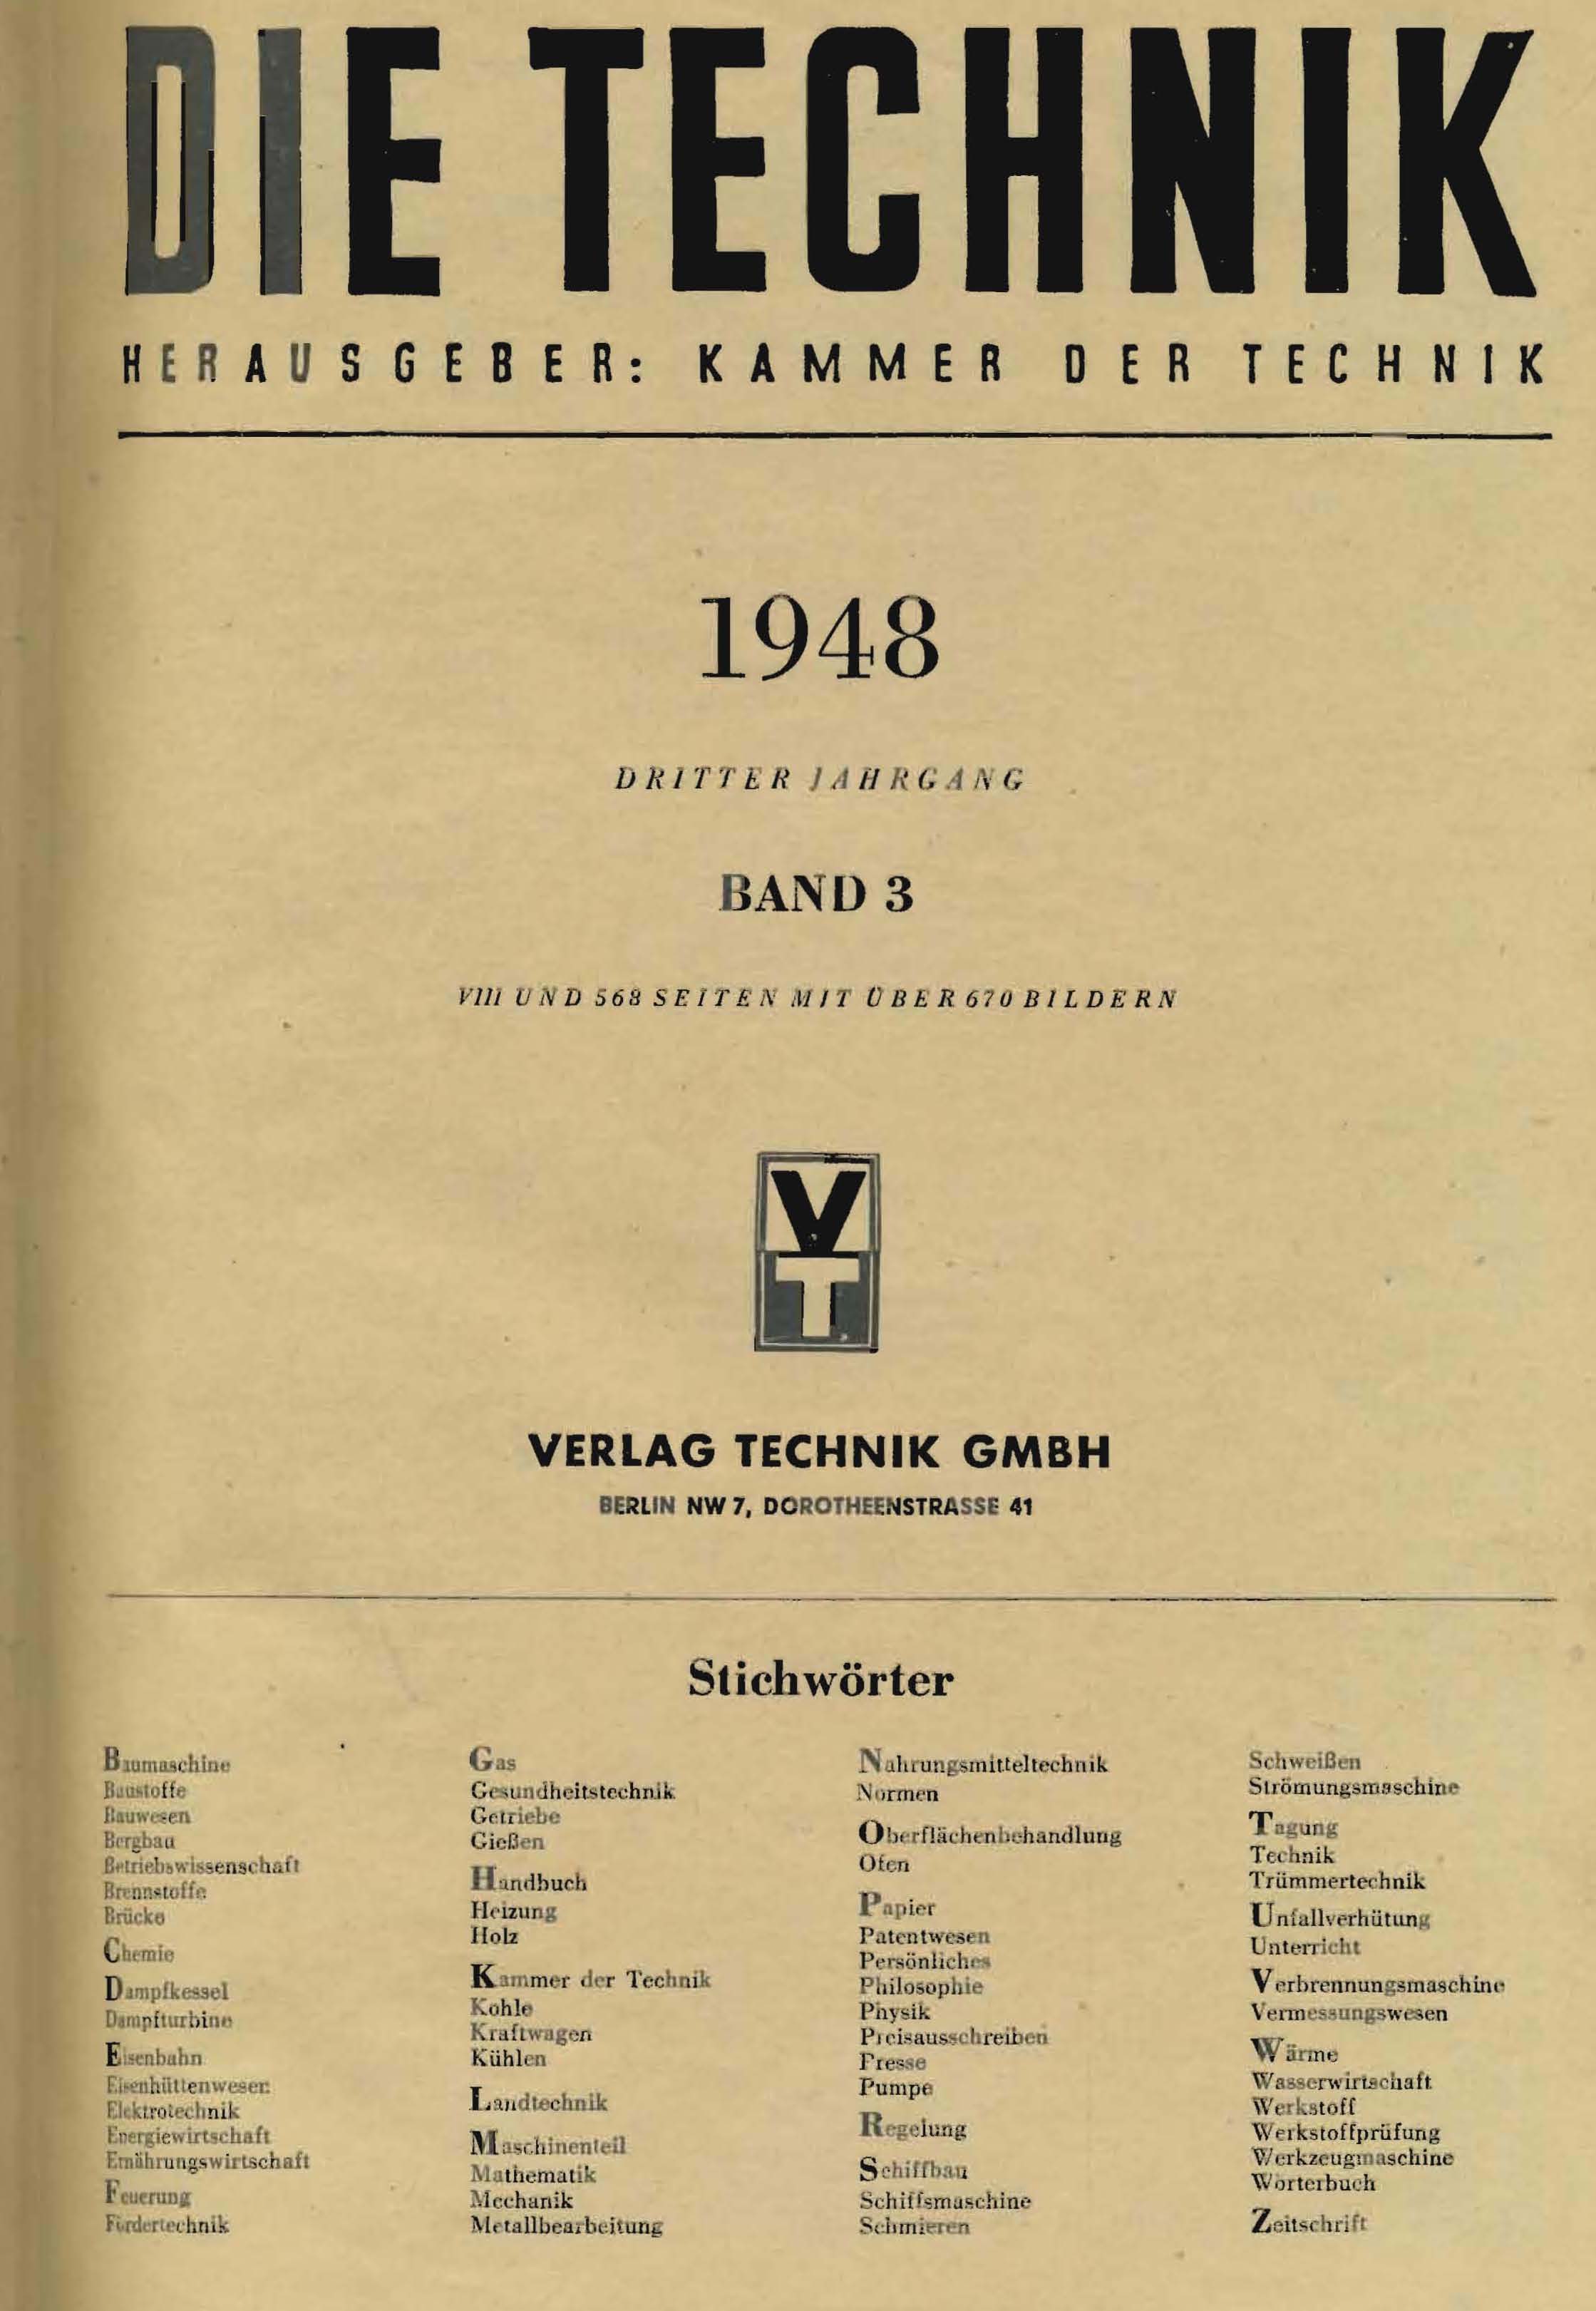 Die Technik, 1948, Dritter Jahrgang, Band 3